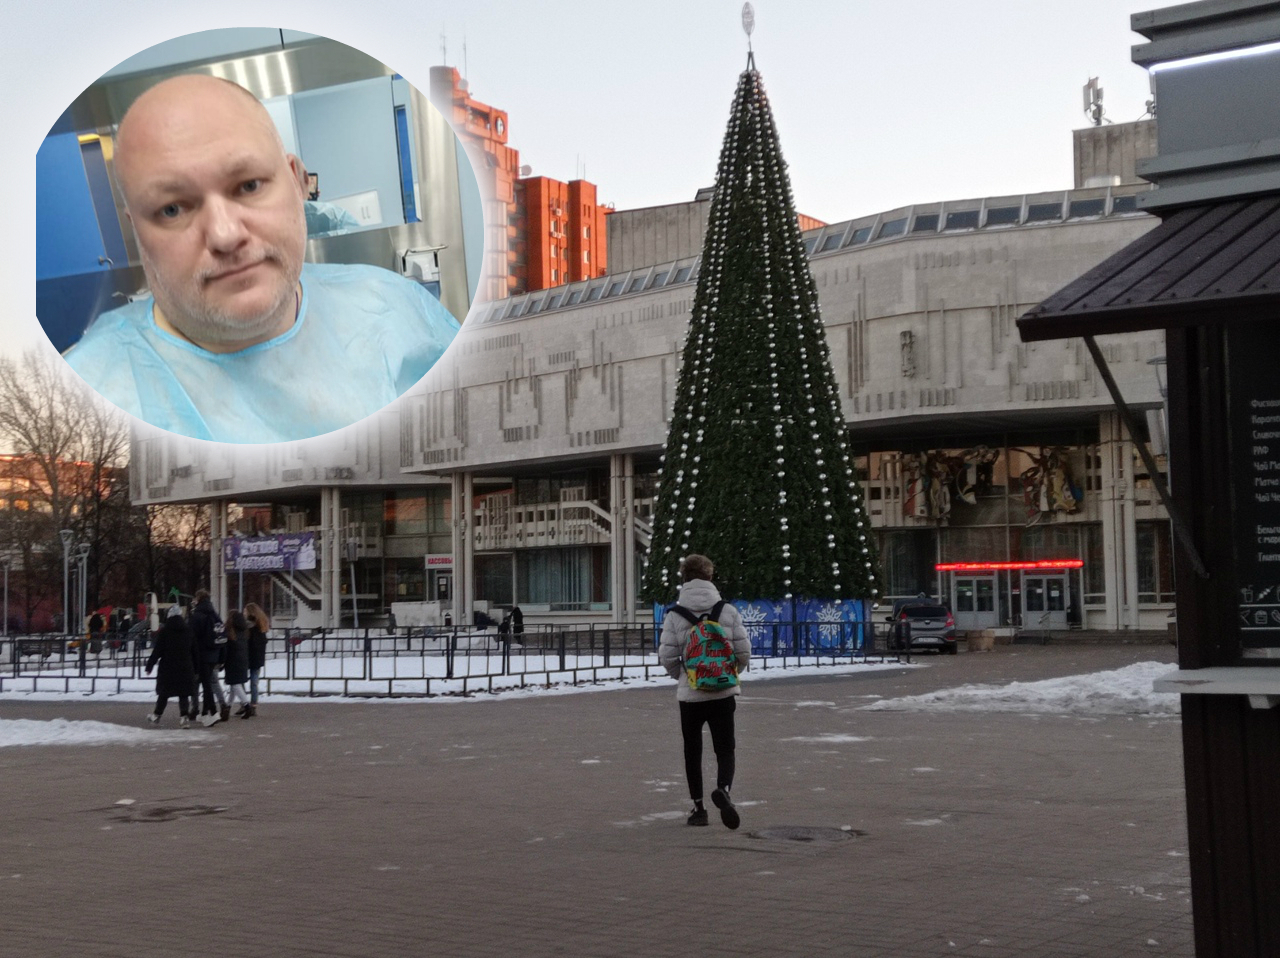 Закуски на морозе: Дмитрий Петровский предложил рестораторам план на корпоративы